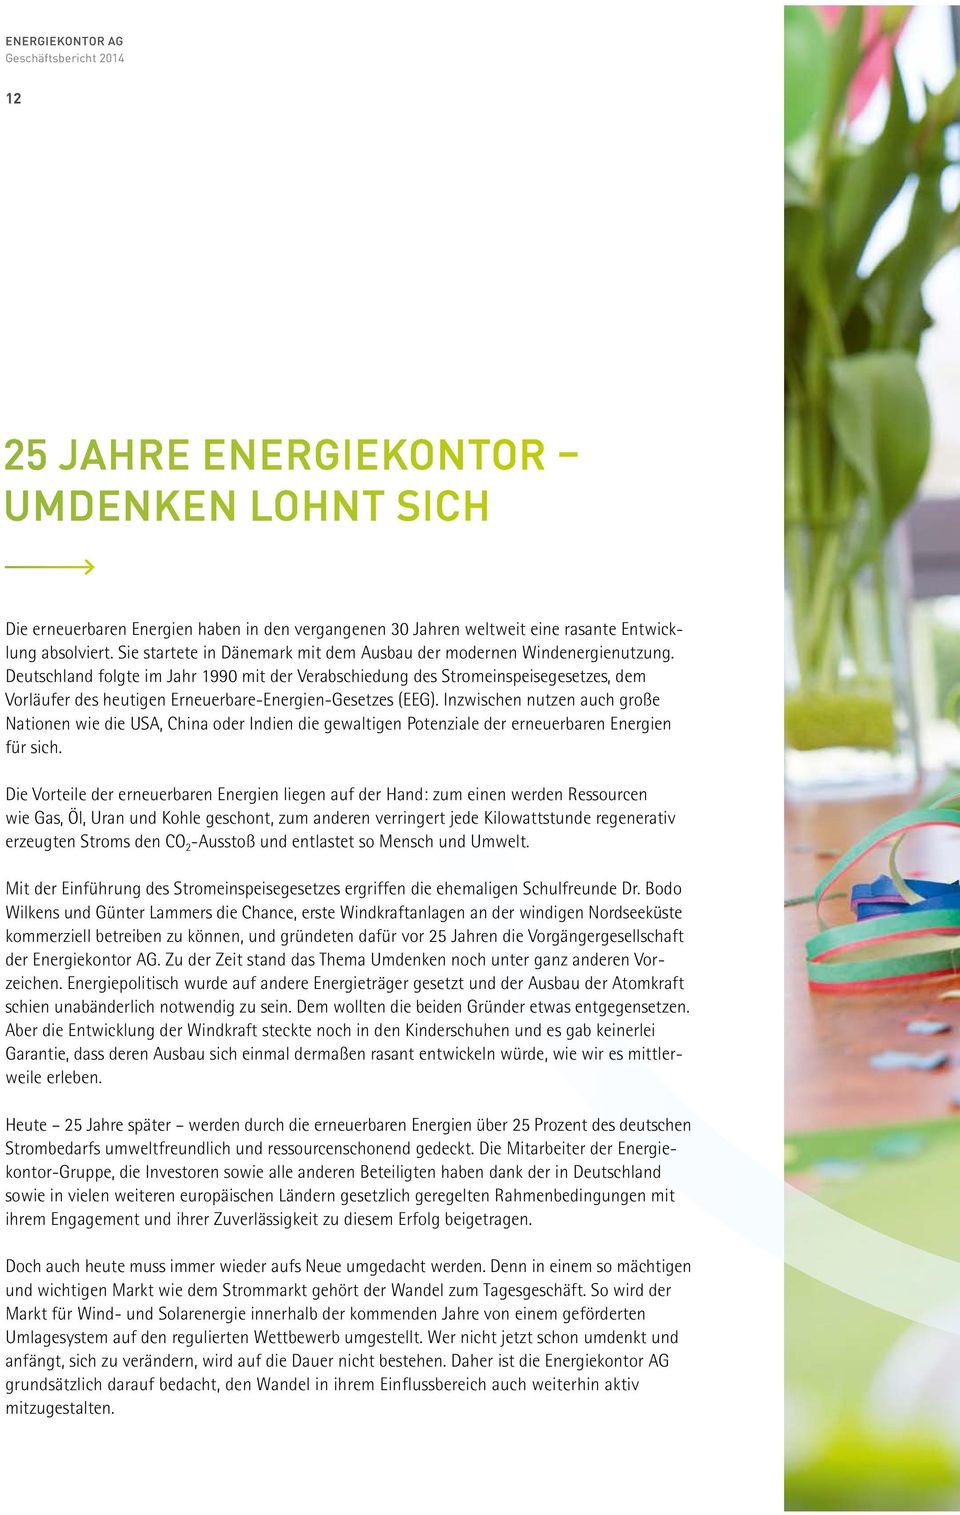 Deutschland folgte im Jahr 1990 mit der Verabschiedung des Stromeinspeisegesetzes, dem Vorläufer des heutigen Erneuerbare-Energien-Gesetzes (EEG).